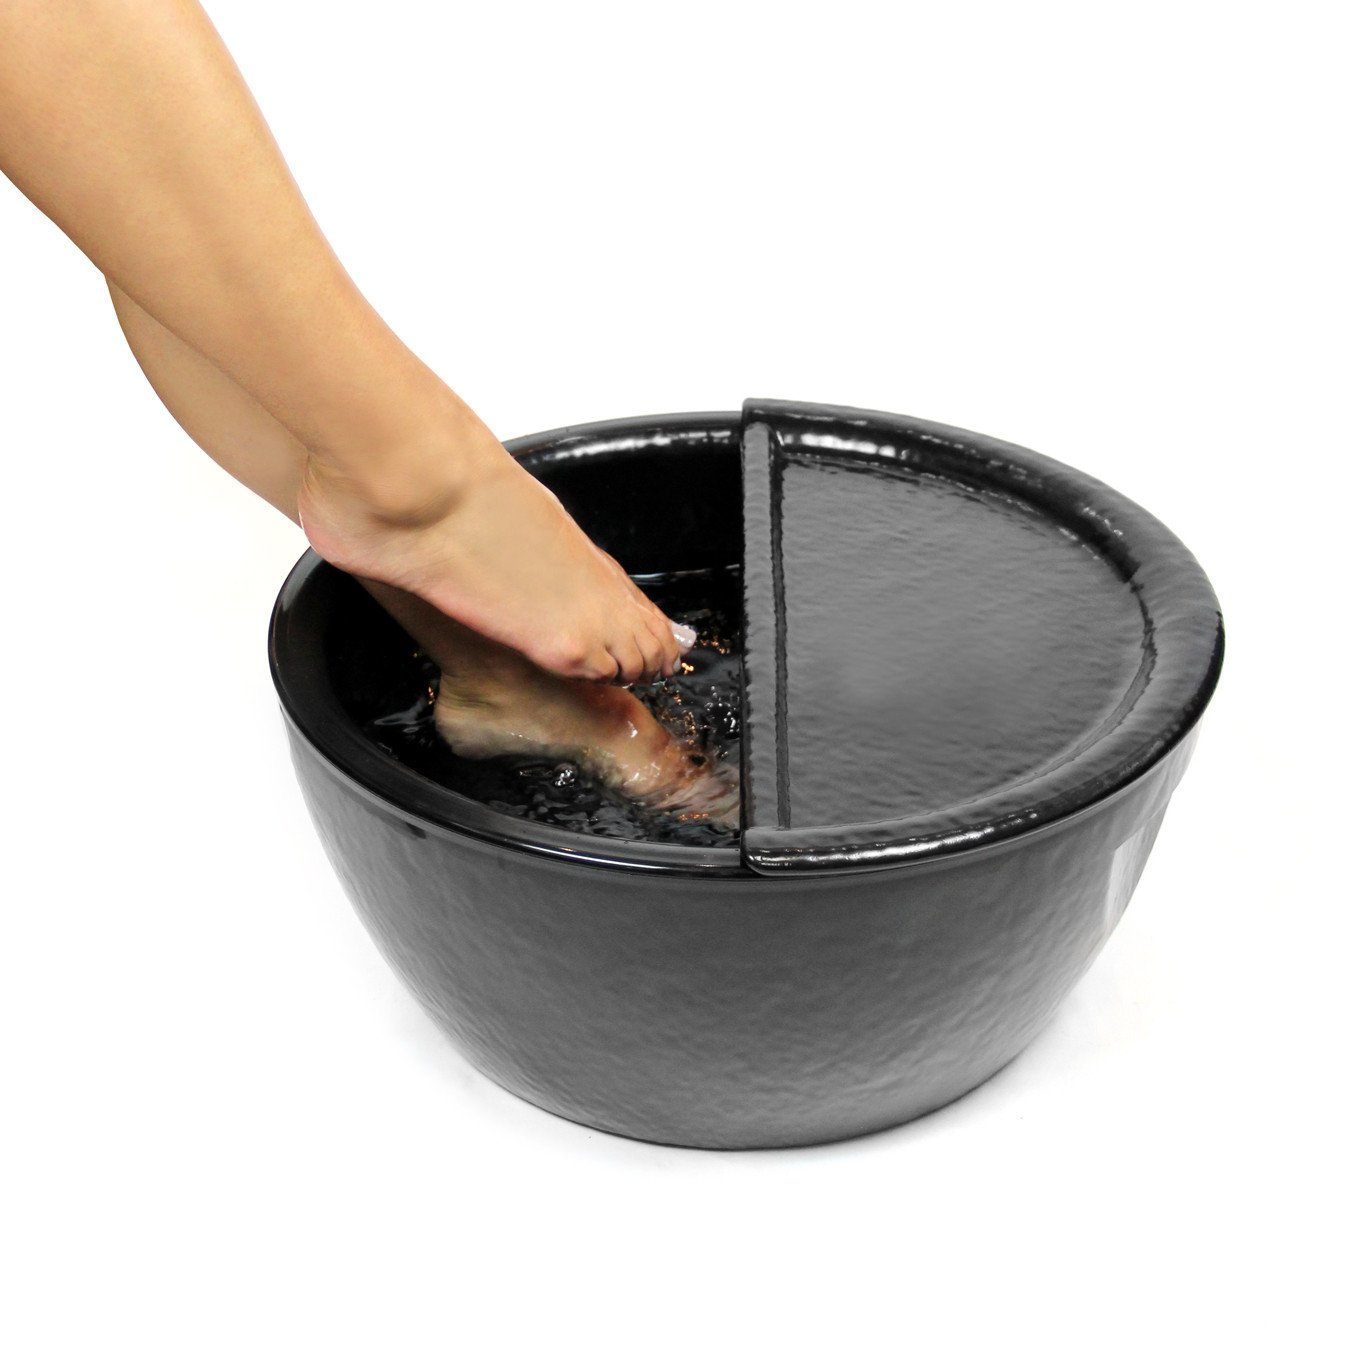 Black Pedicure Bowl Footrest